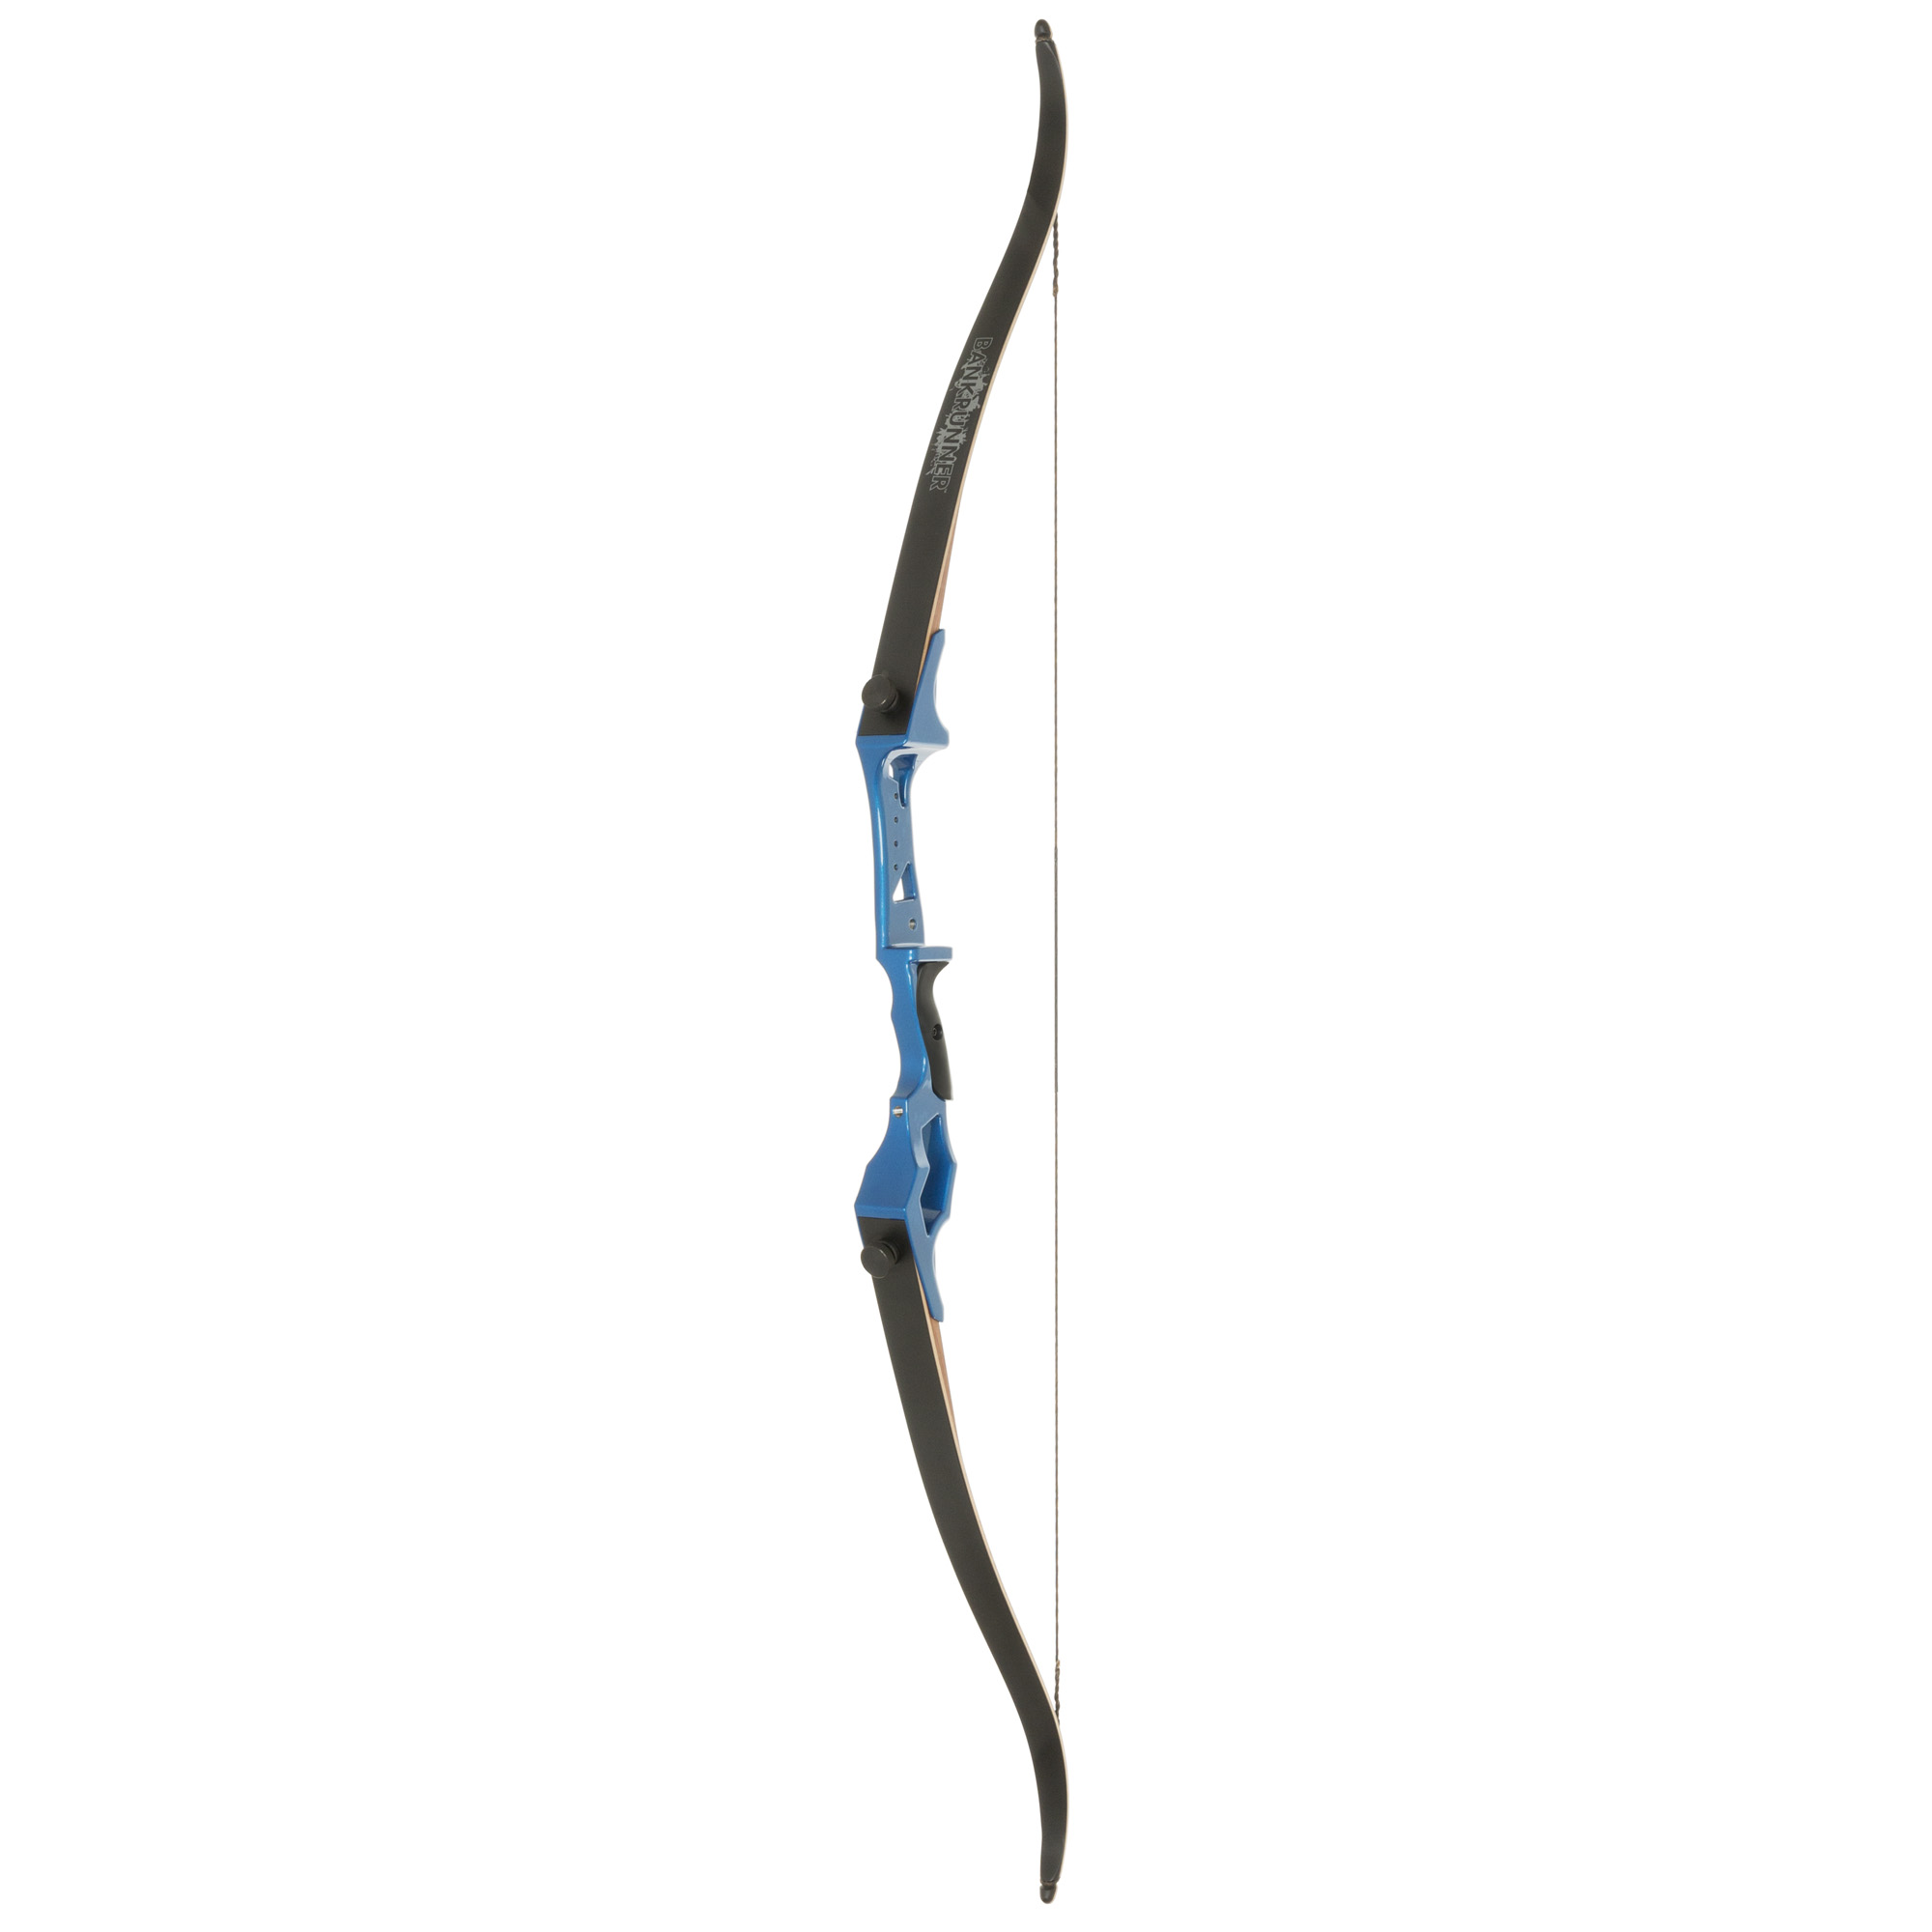 archery clipart recurve bow